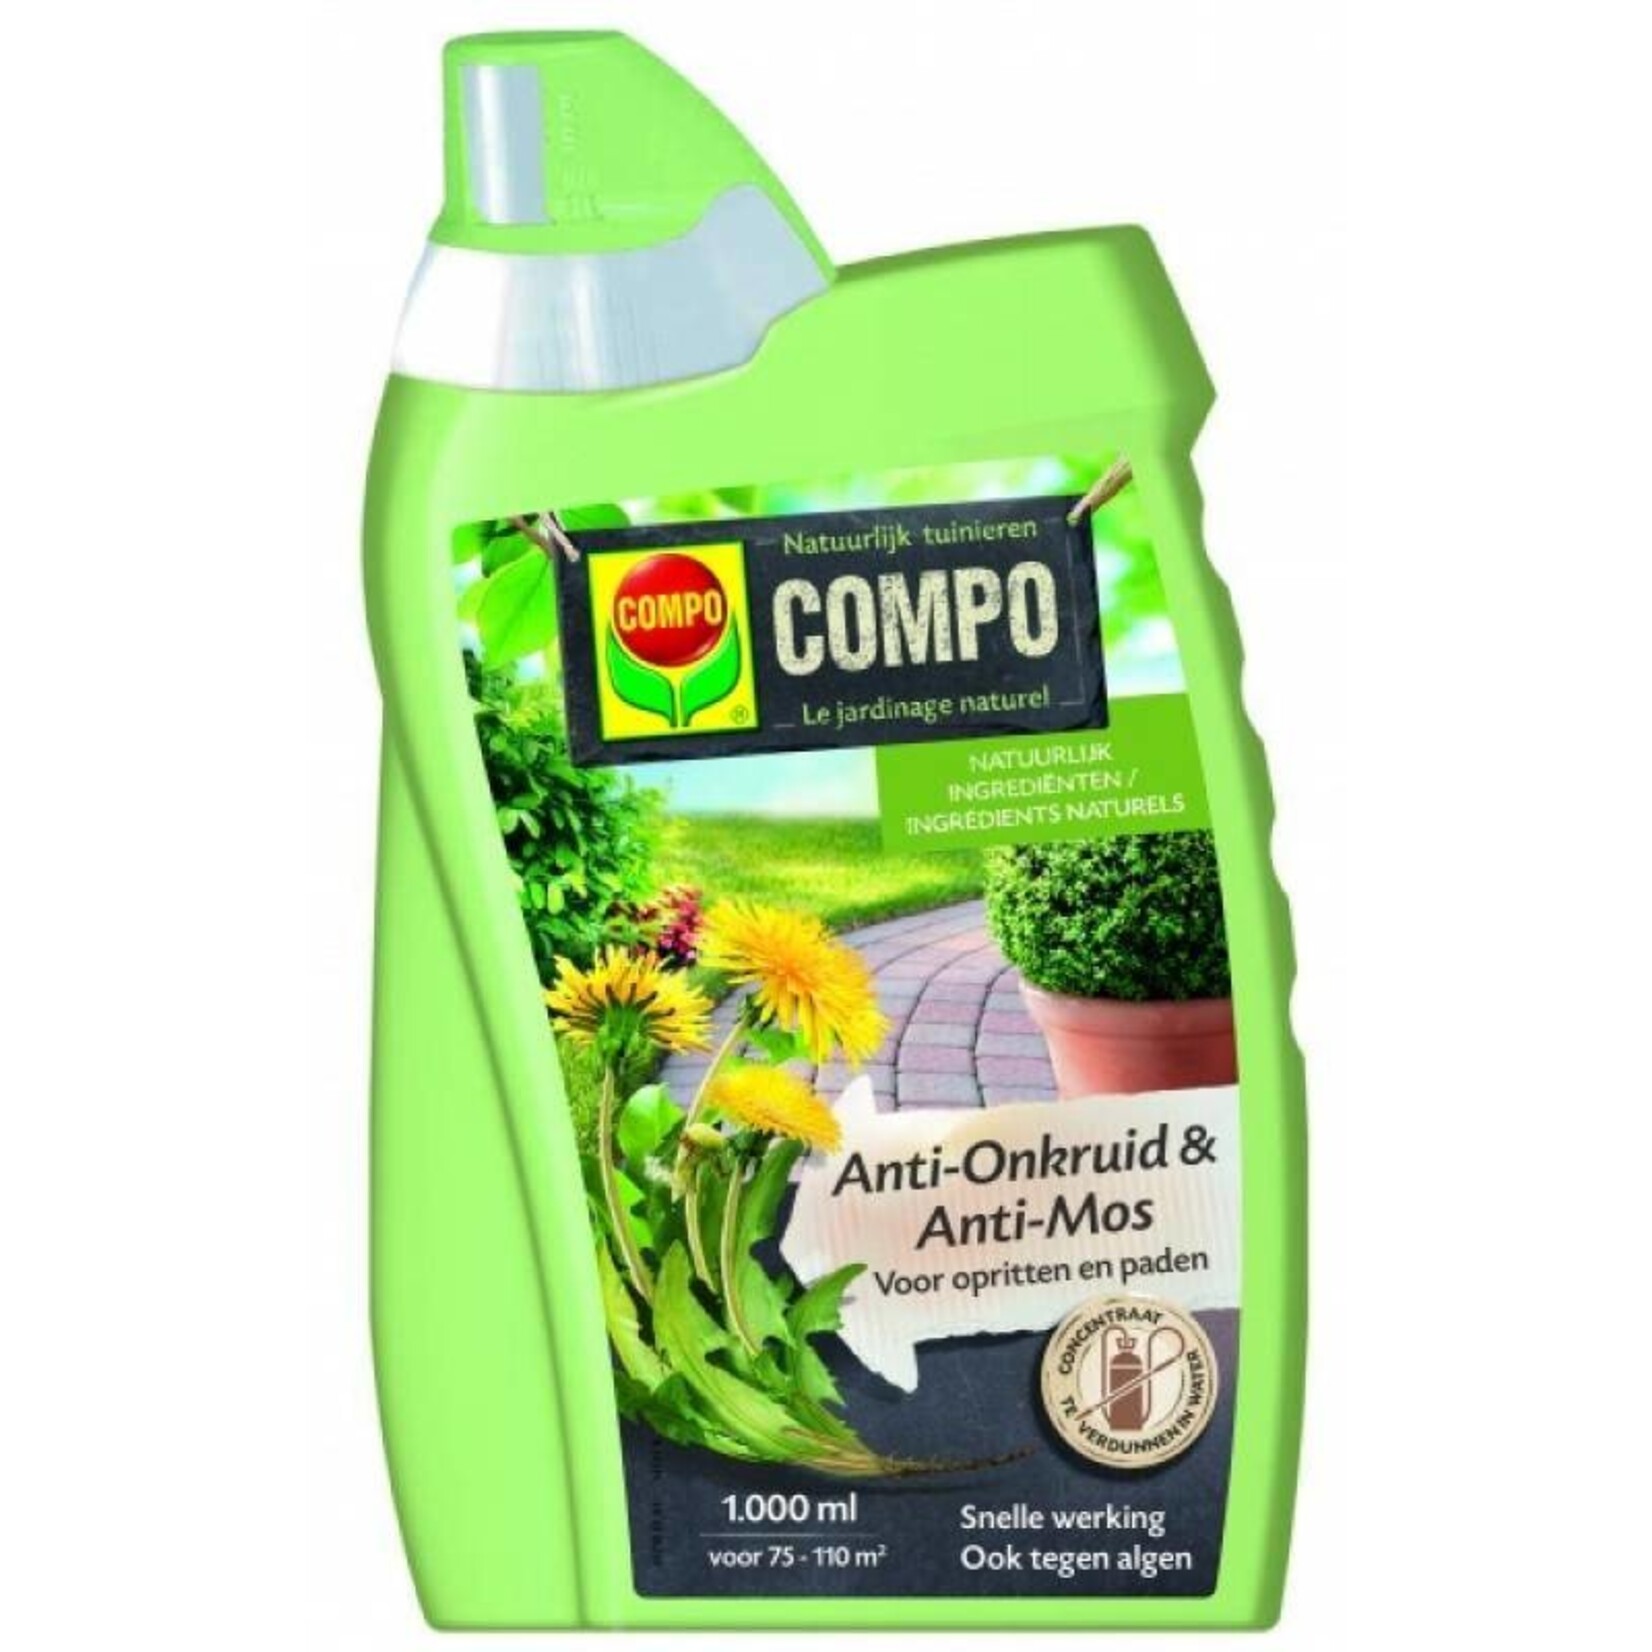 Compo Anti-Onkruid & Anti-Mos Opritten & Paden Concentraat 1 liter (werkt ook tegen algen)